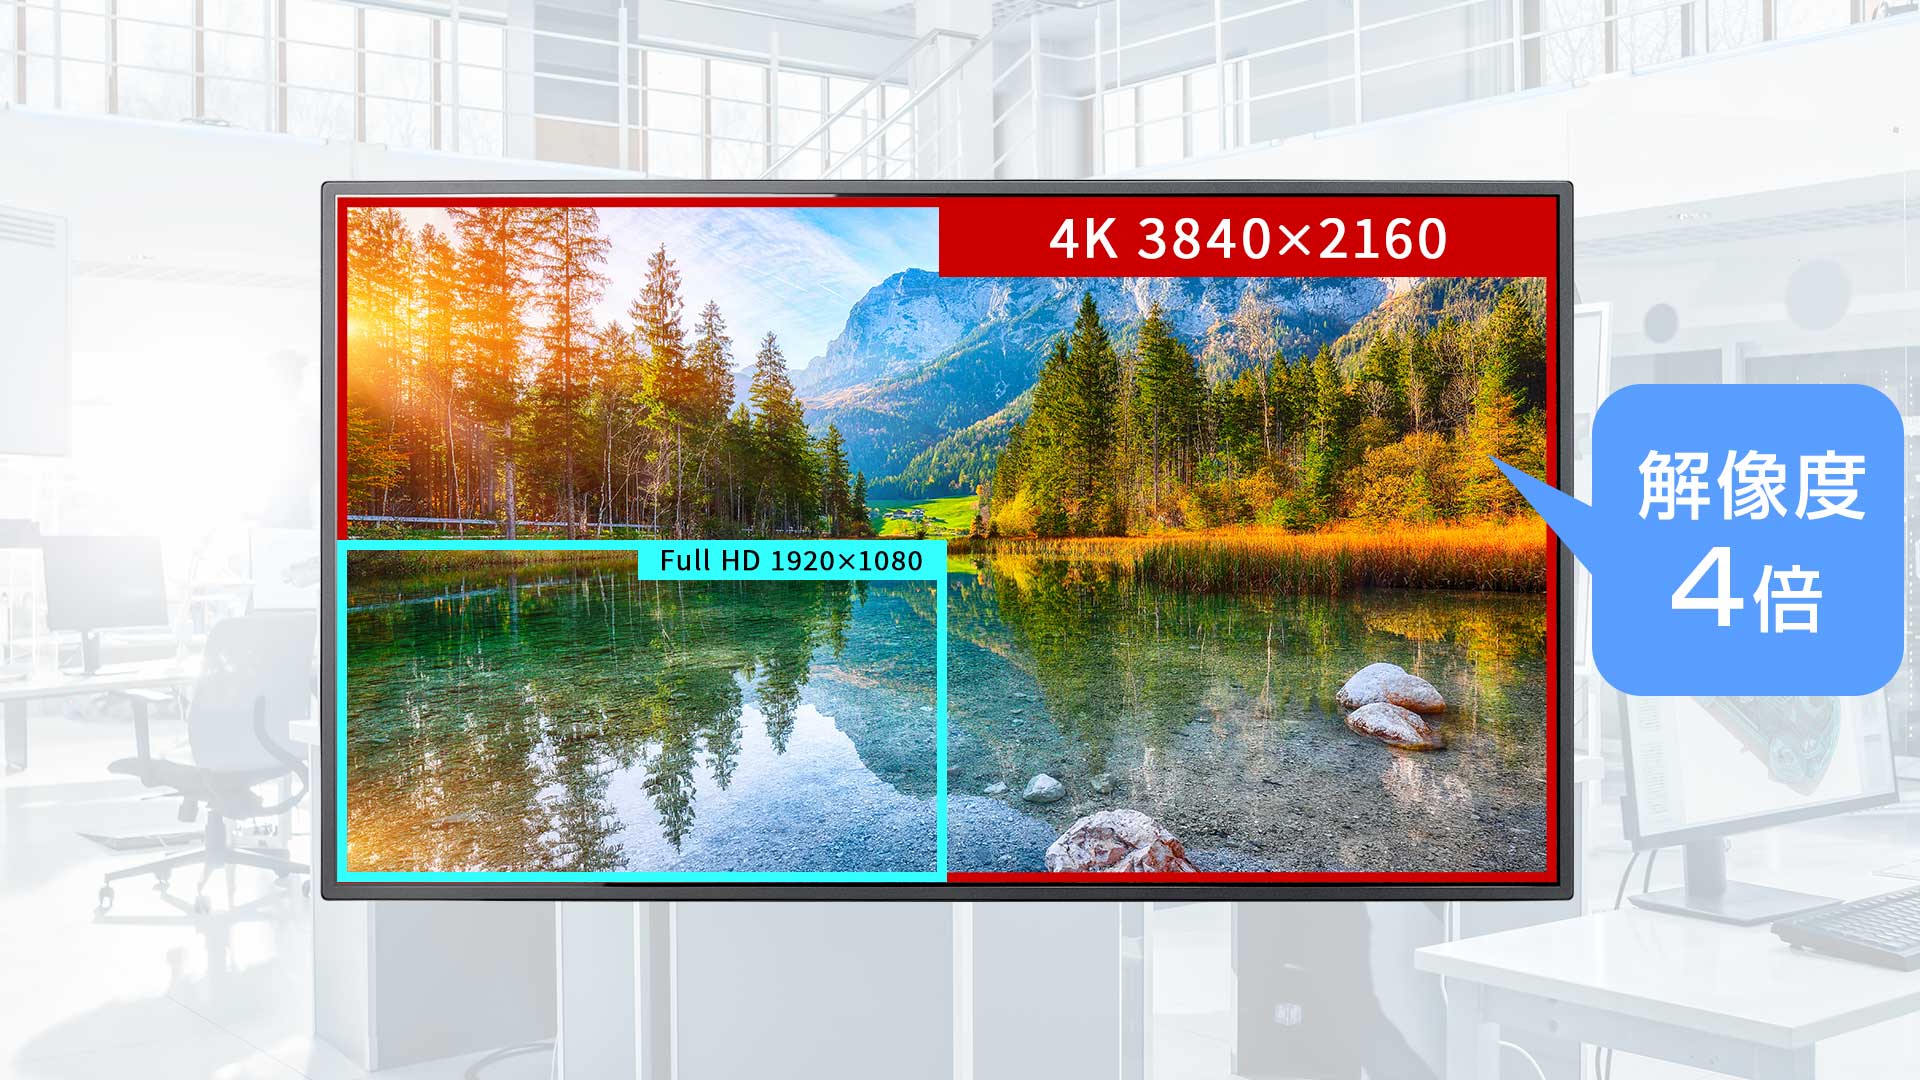 4K解像度対応でフルHDの4倍の表示領域を実現